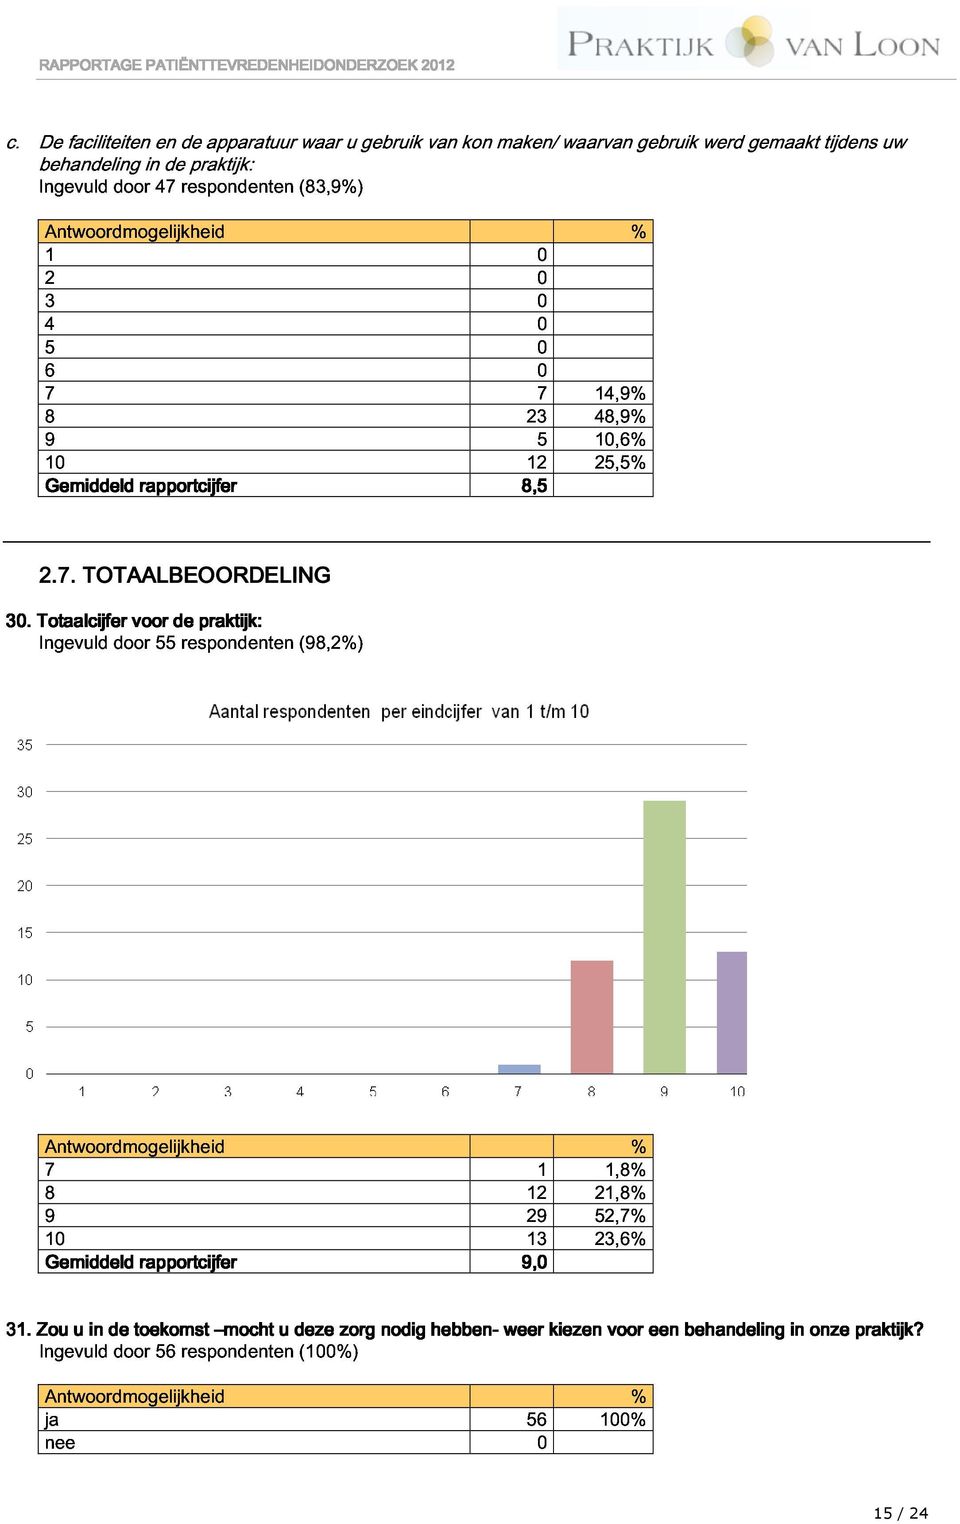 Ttaalcijfer Ingevuld dr vr 55 de respndenten praktijk tijk: (98,2%) 2.7.